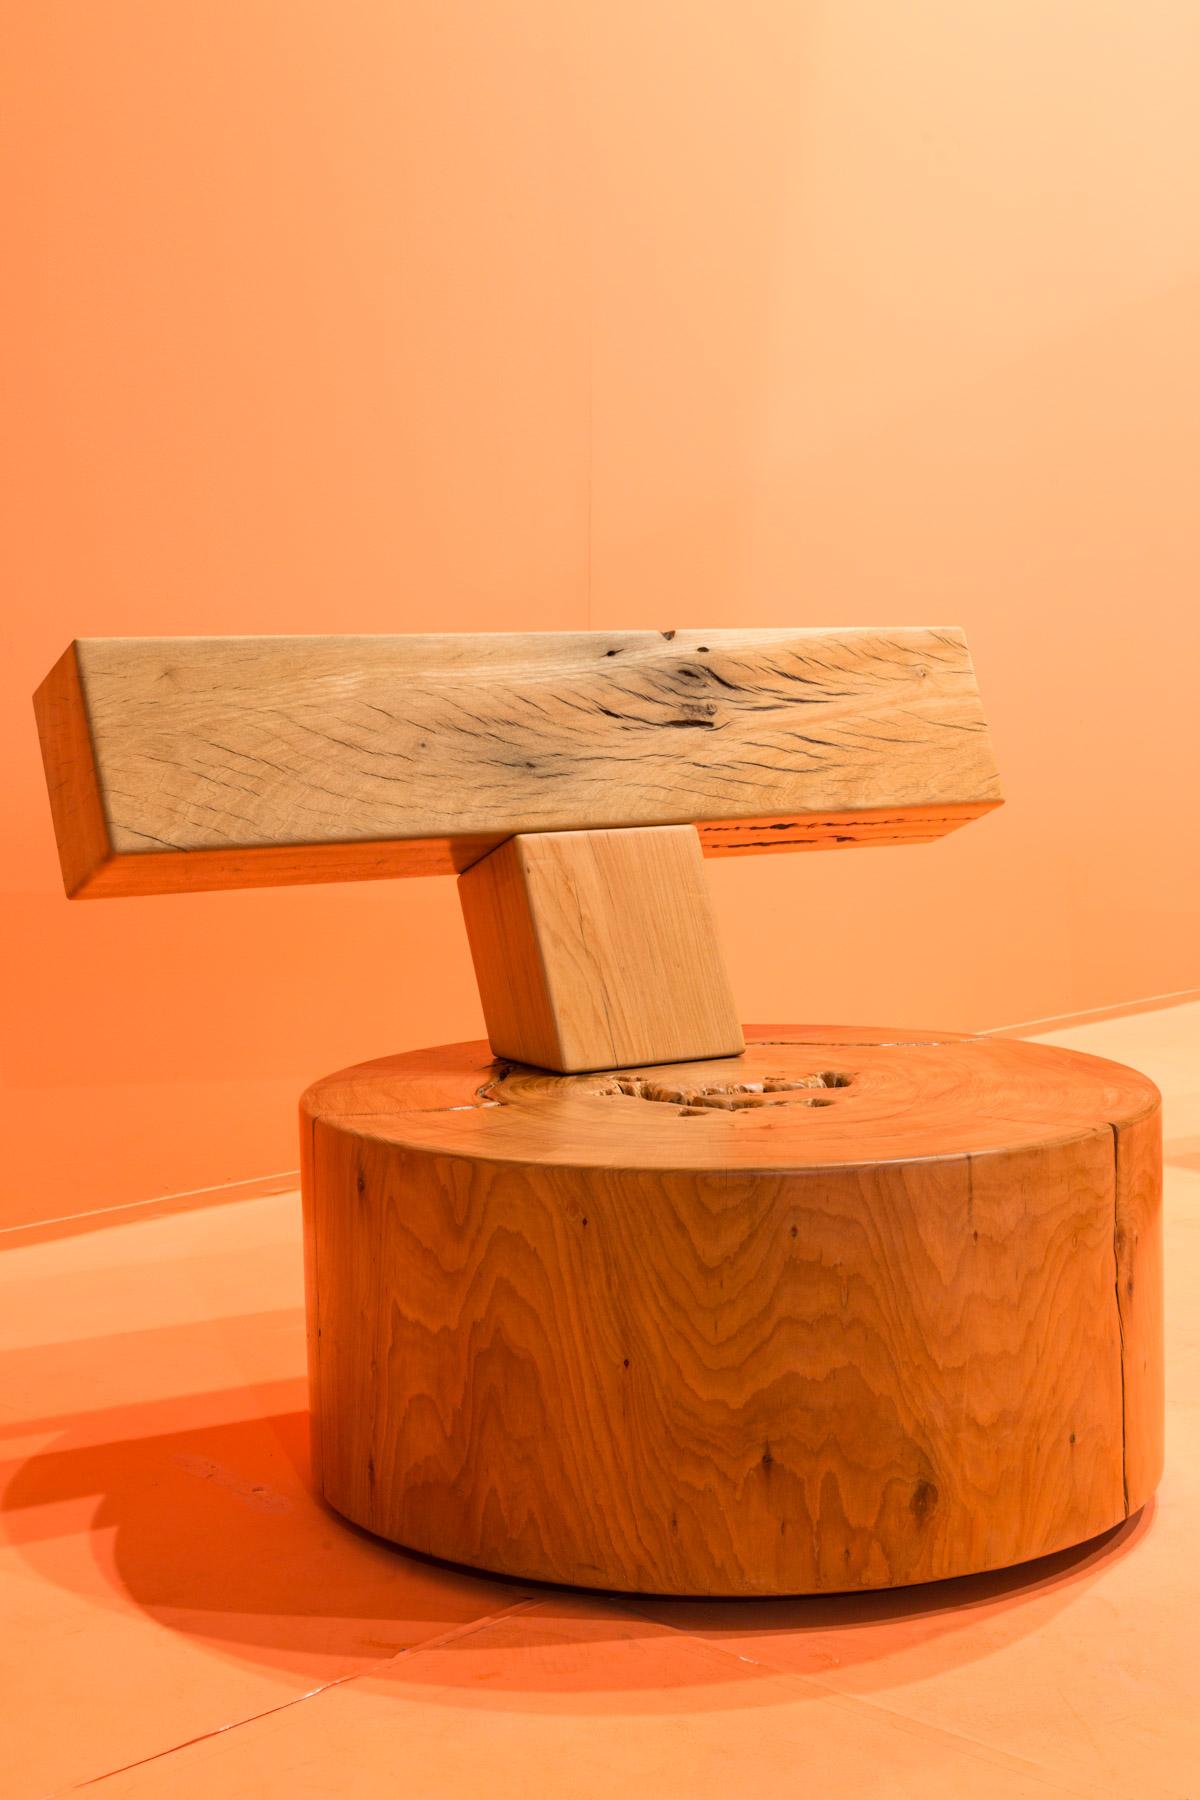 Cruz Lounge Chair, Zanini de Zanine, Contemporary Design 1